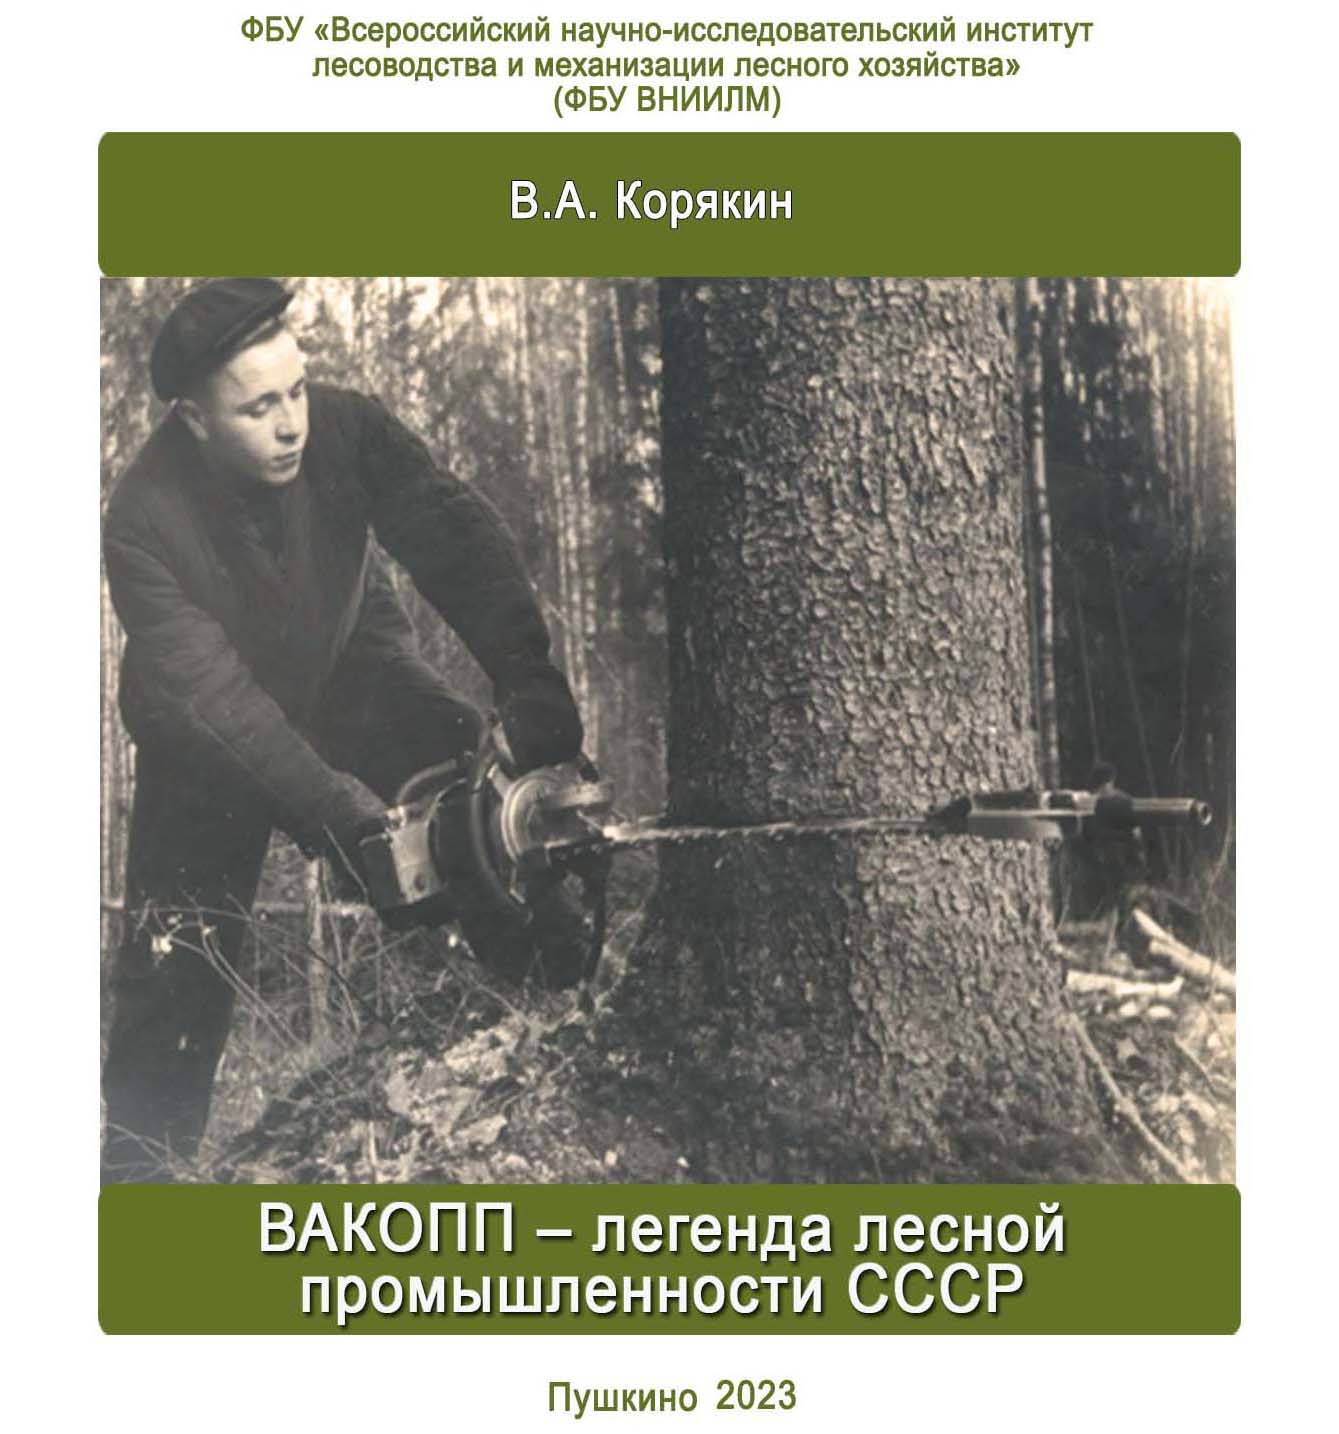 ВАКОПП – легенда лесной промышленности СССР